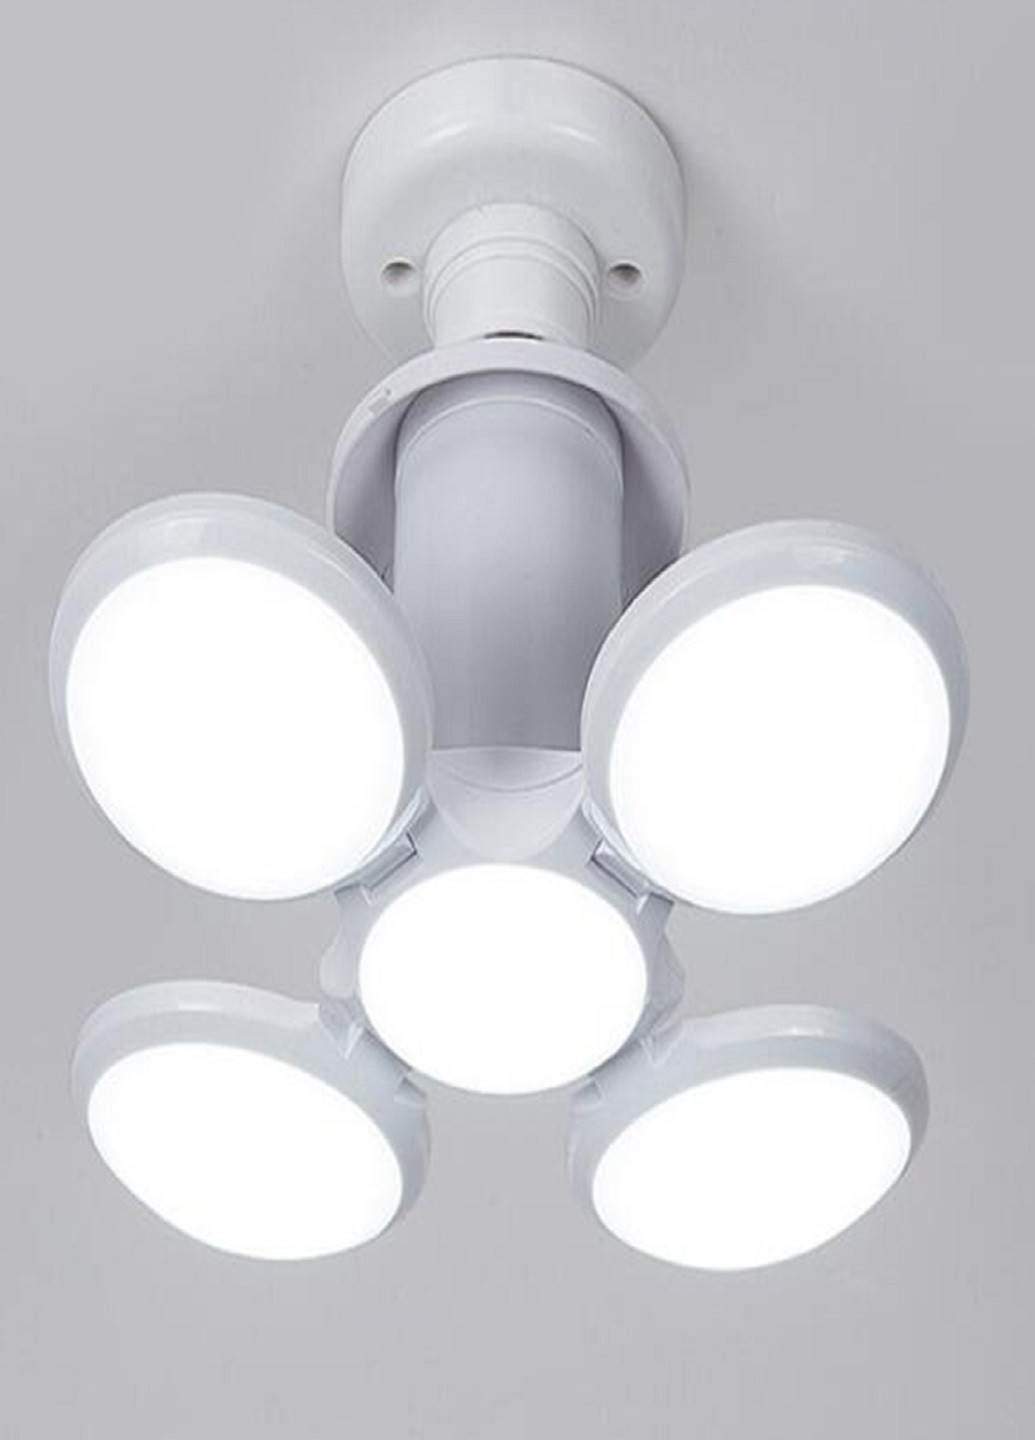 Складная светодиодная лампа-люстра Lamp 4 лопасти VTech белая